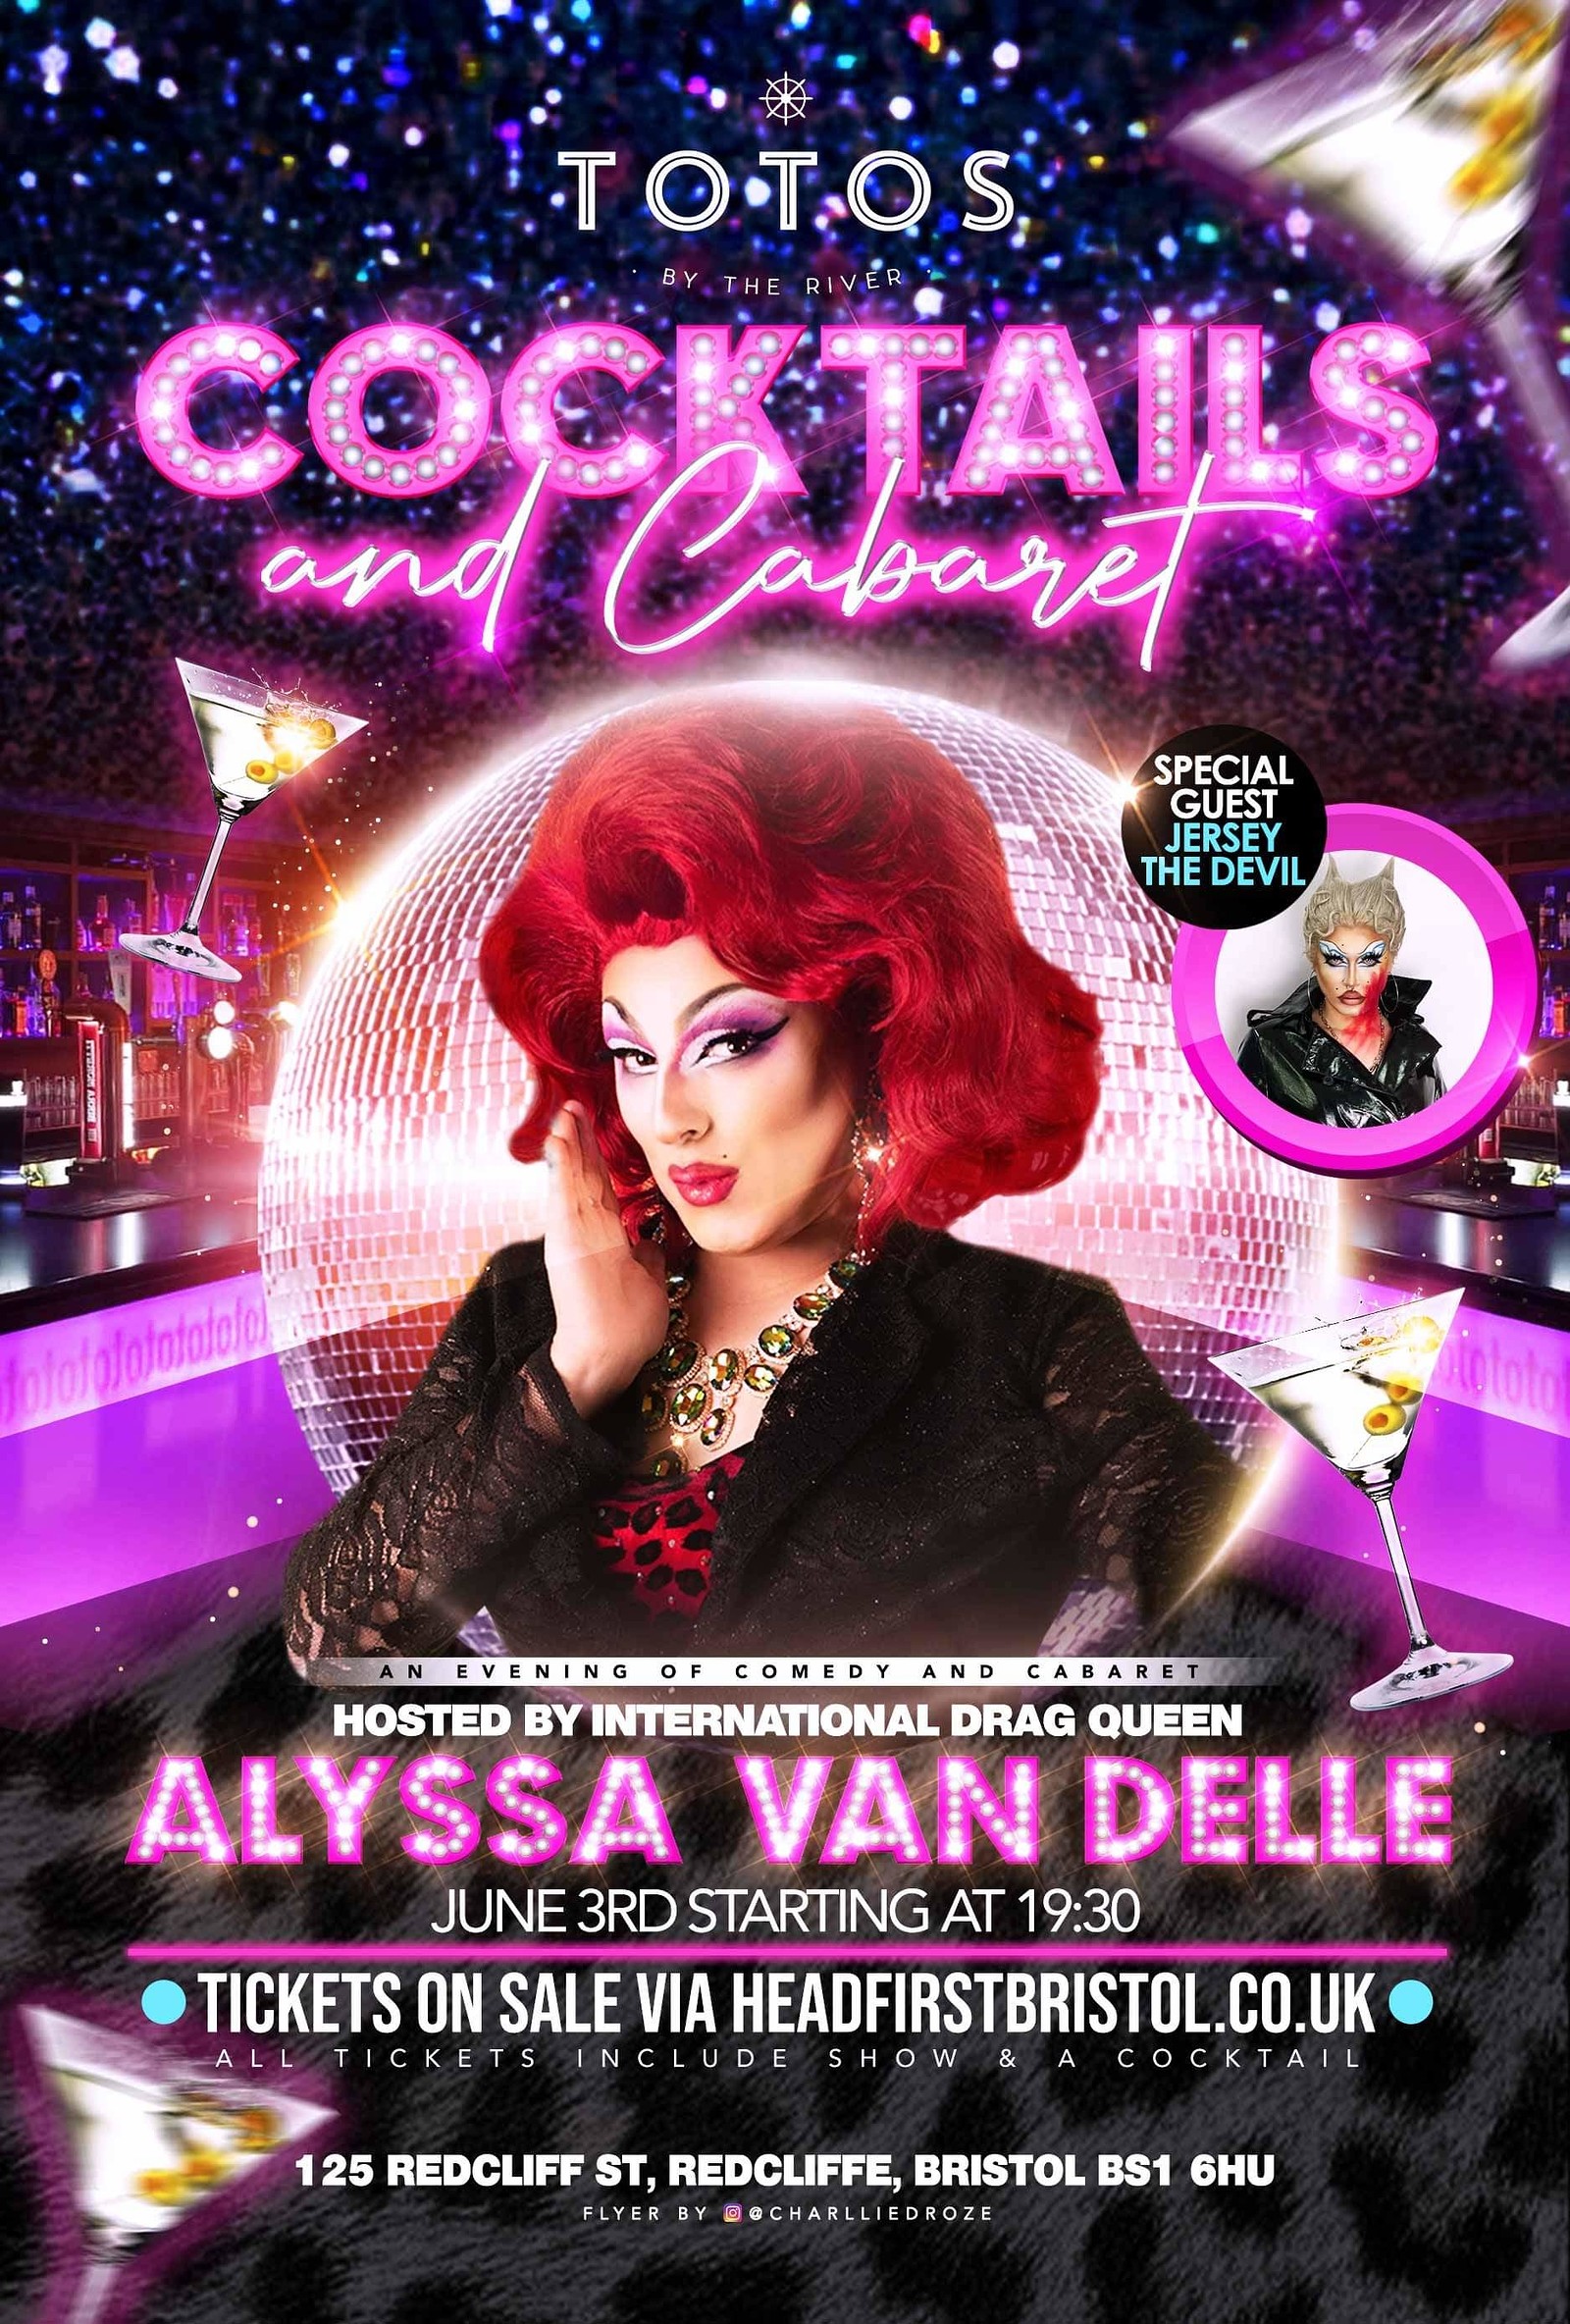 Cocktails & cabaret with Alyssa Van Delle at Cocktails & cabaret!